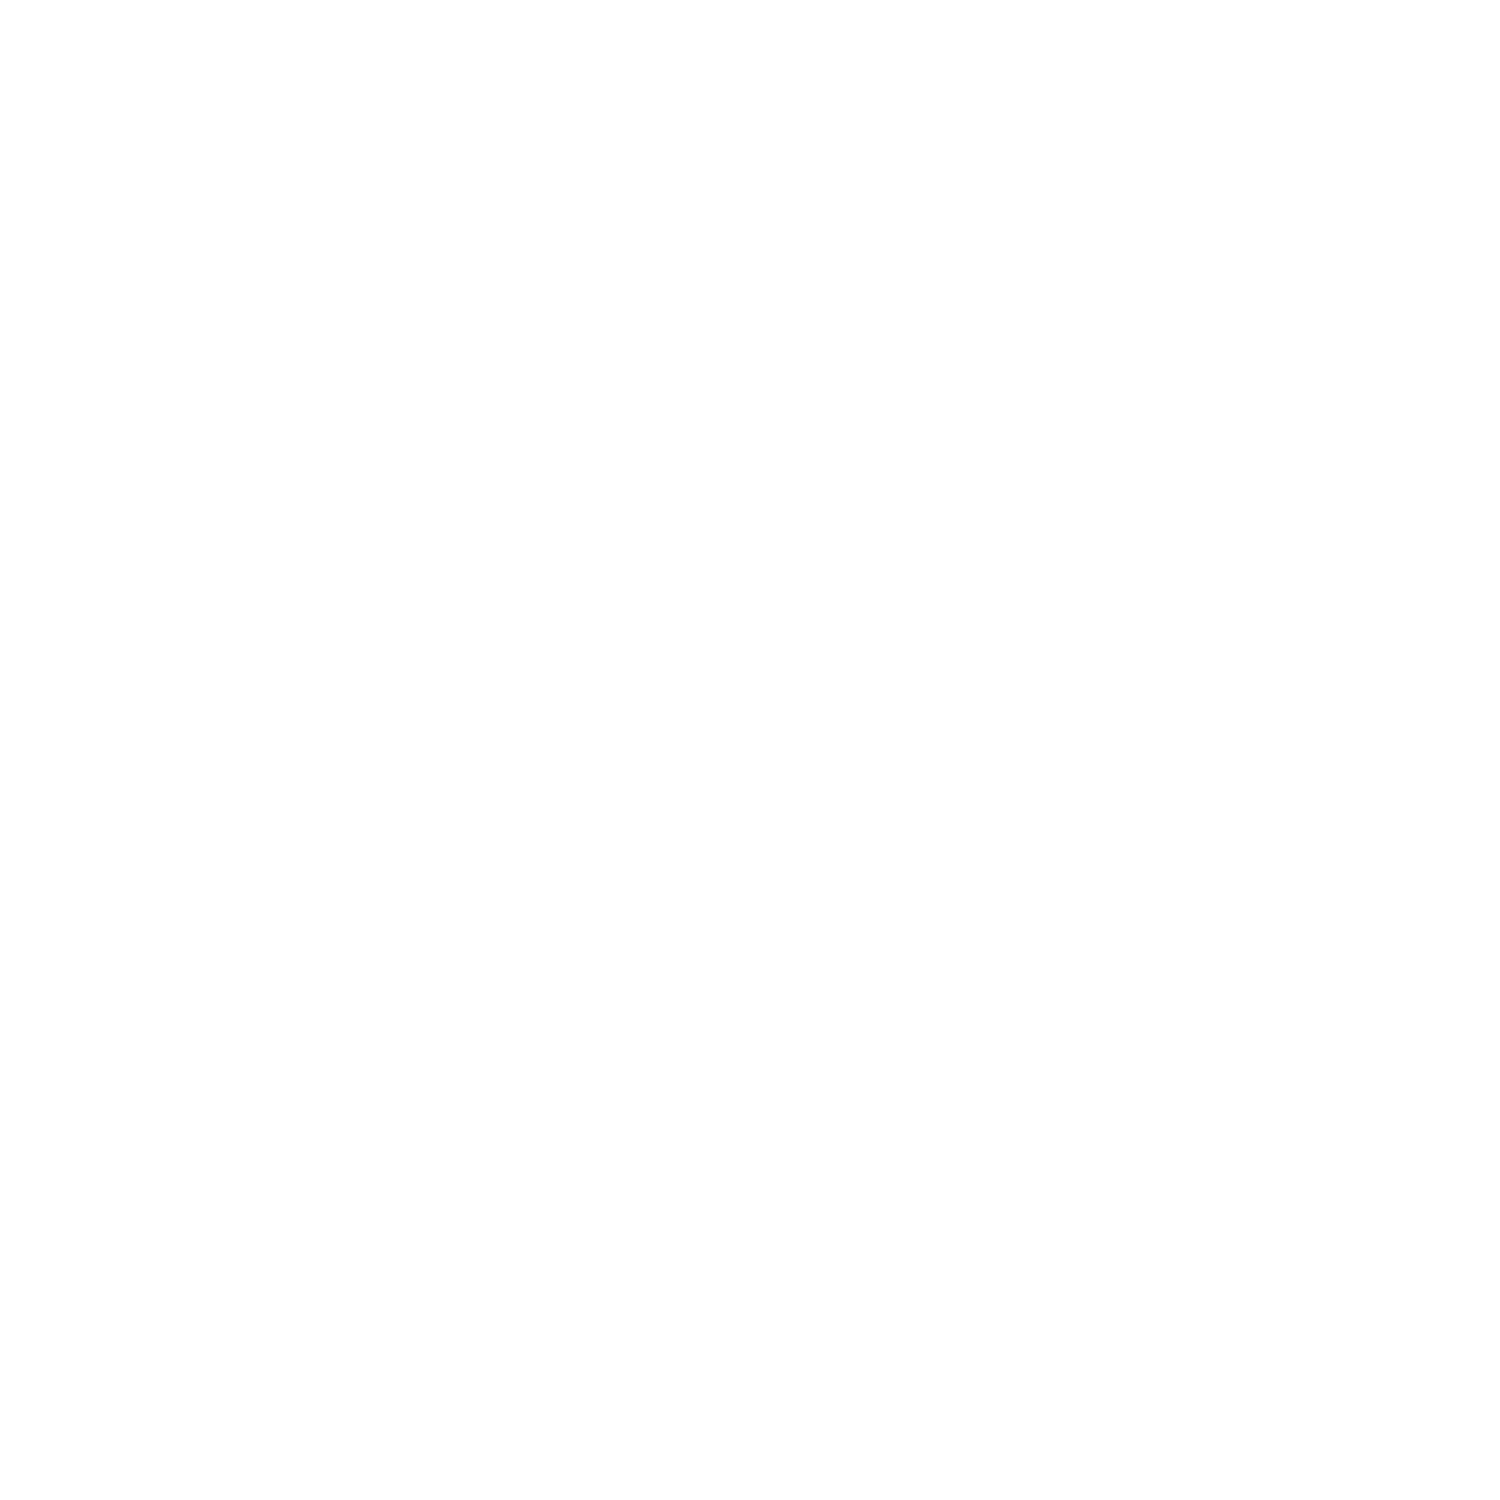 Pompano Seafood Deli